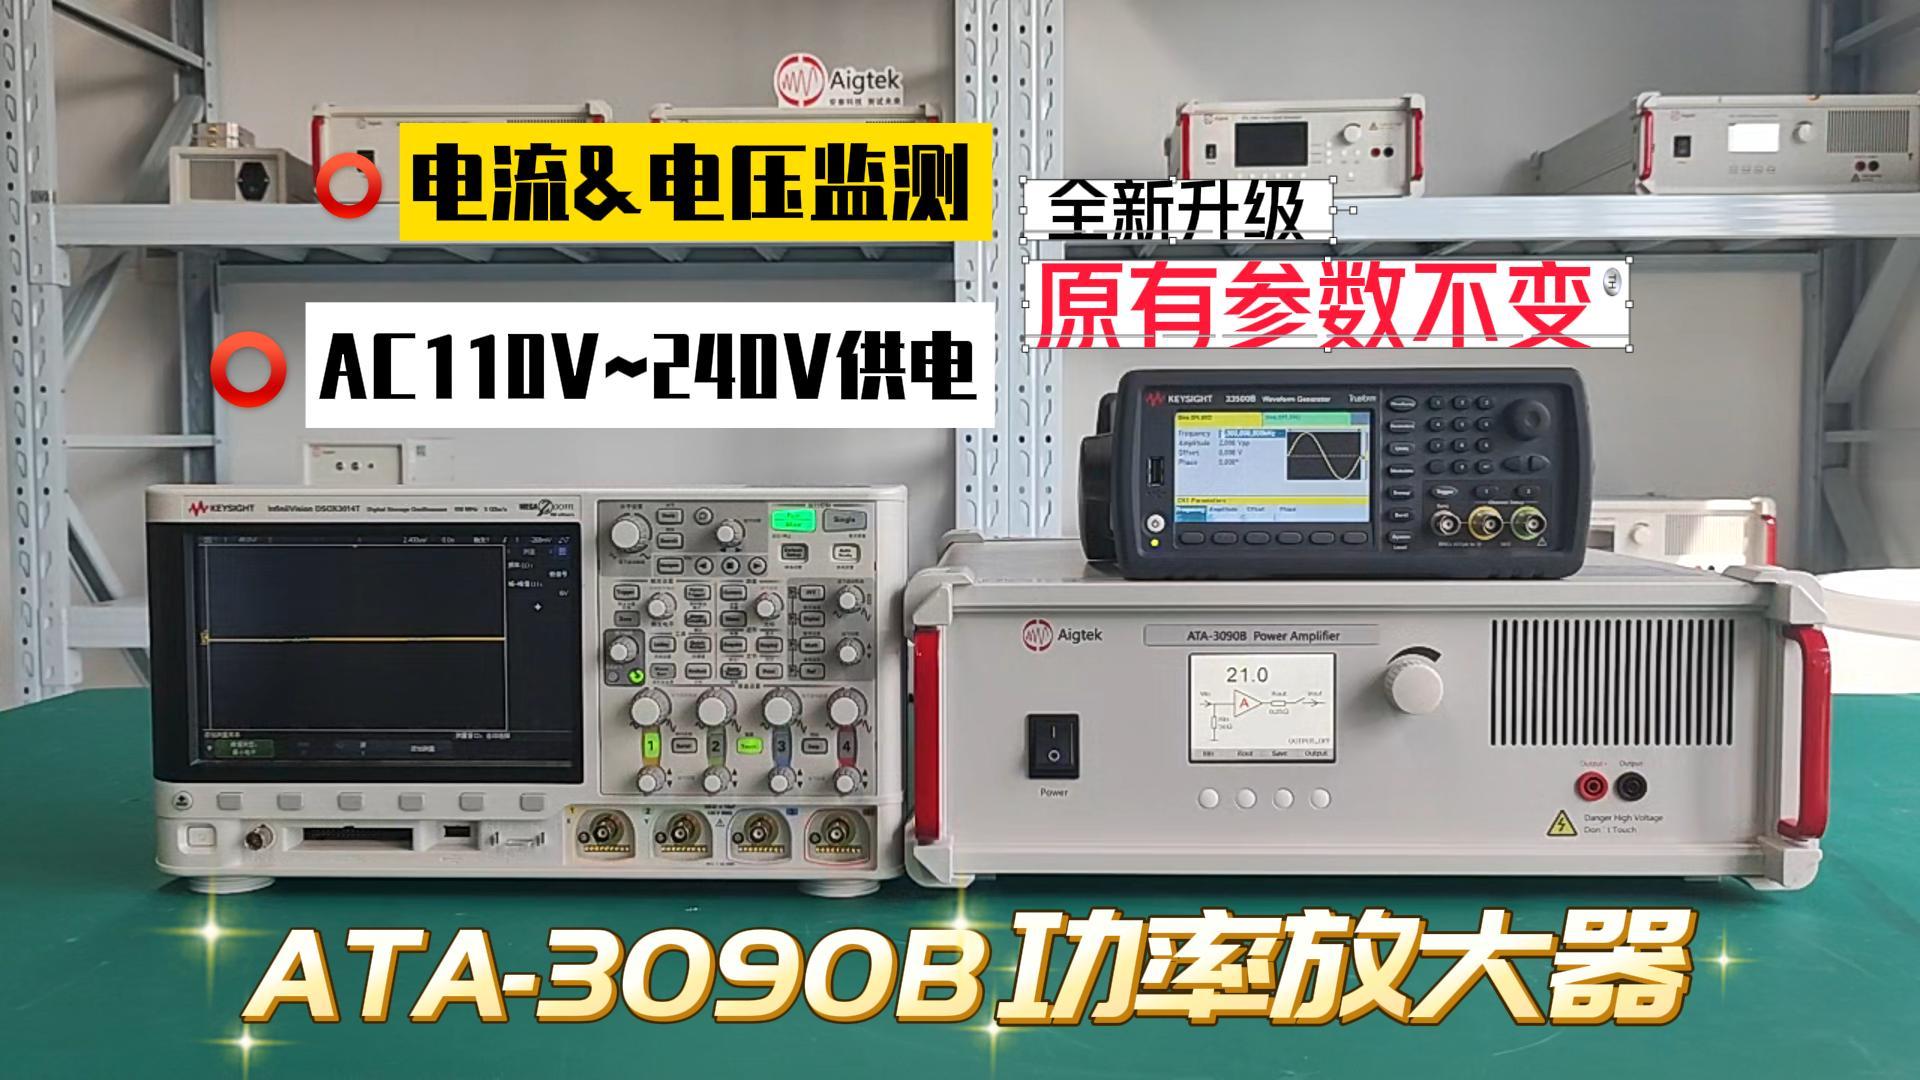 【ATA-3090B功率放大器】產品全新升級！參數不變！功能更全面！測試利器！#功率放大器 #電子制作 